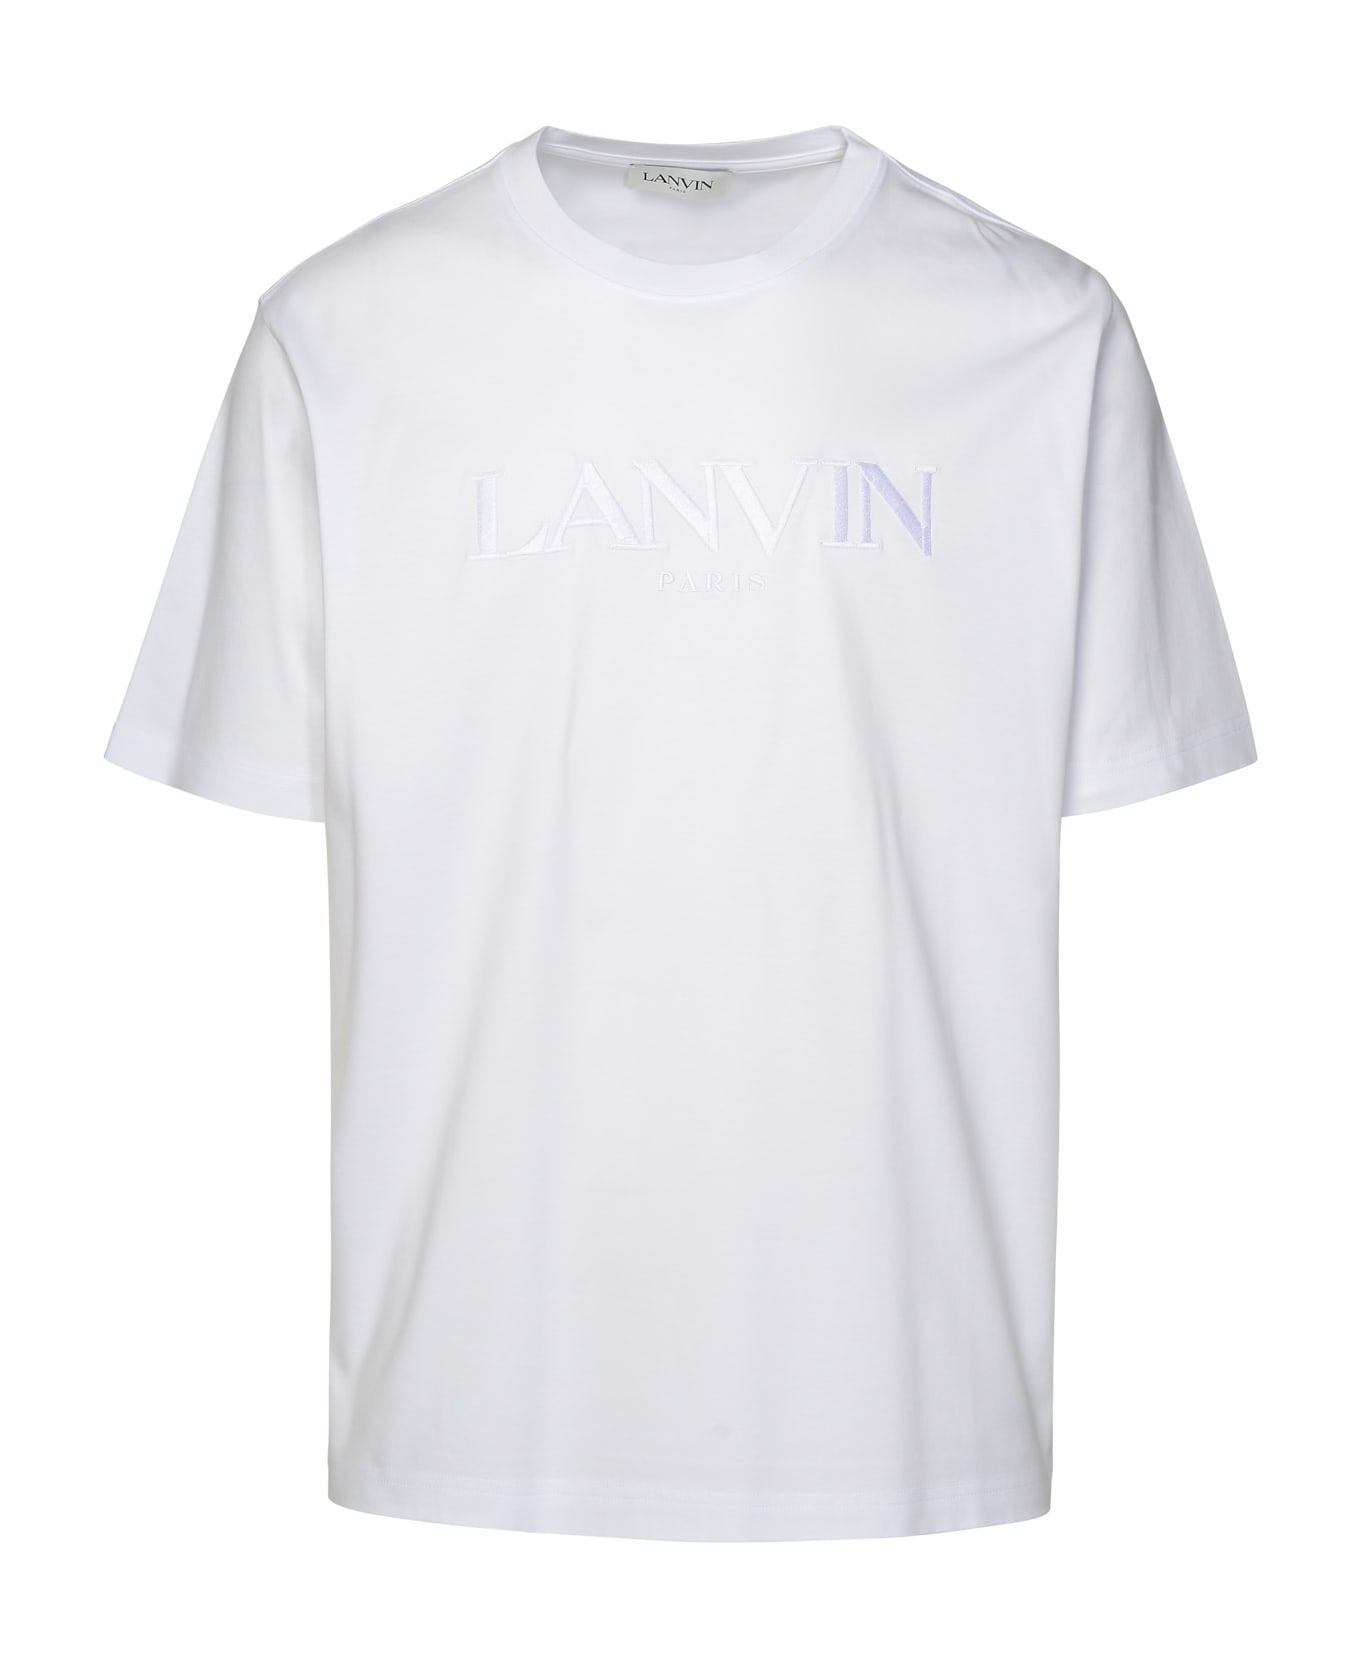 Lanvin White Cotton T-shirt - Optic white シャツ